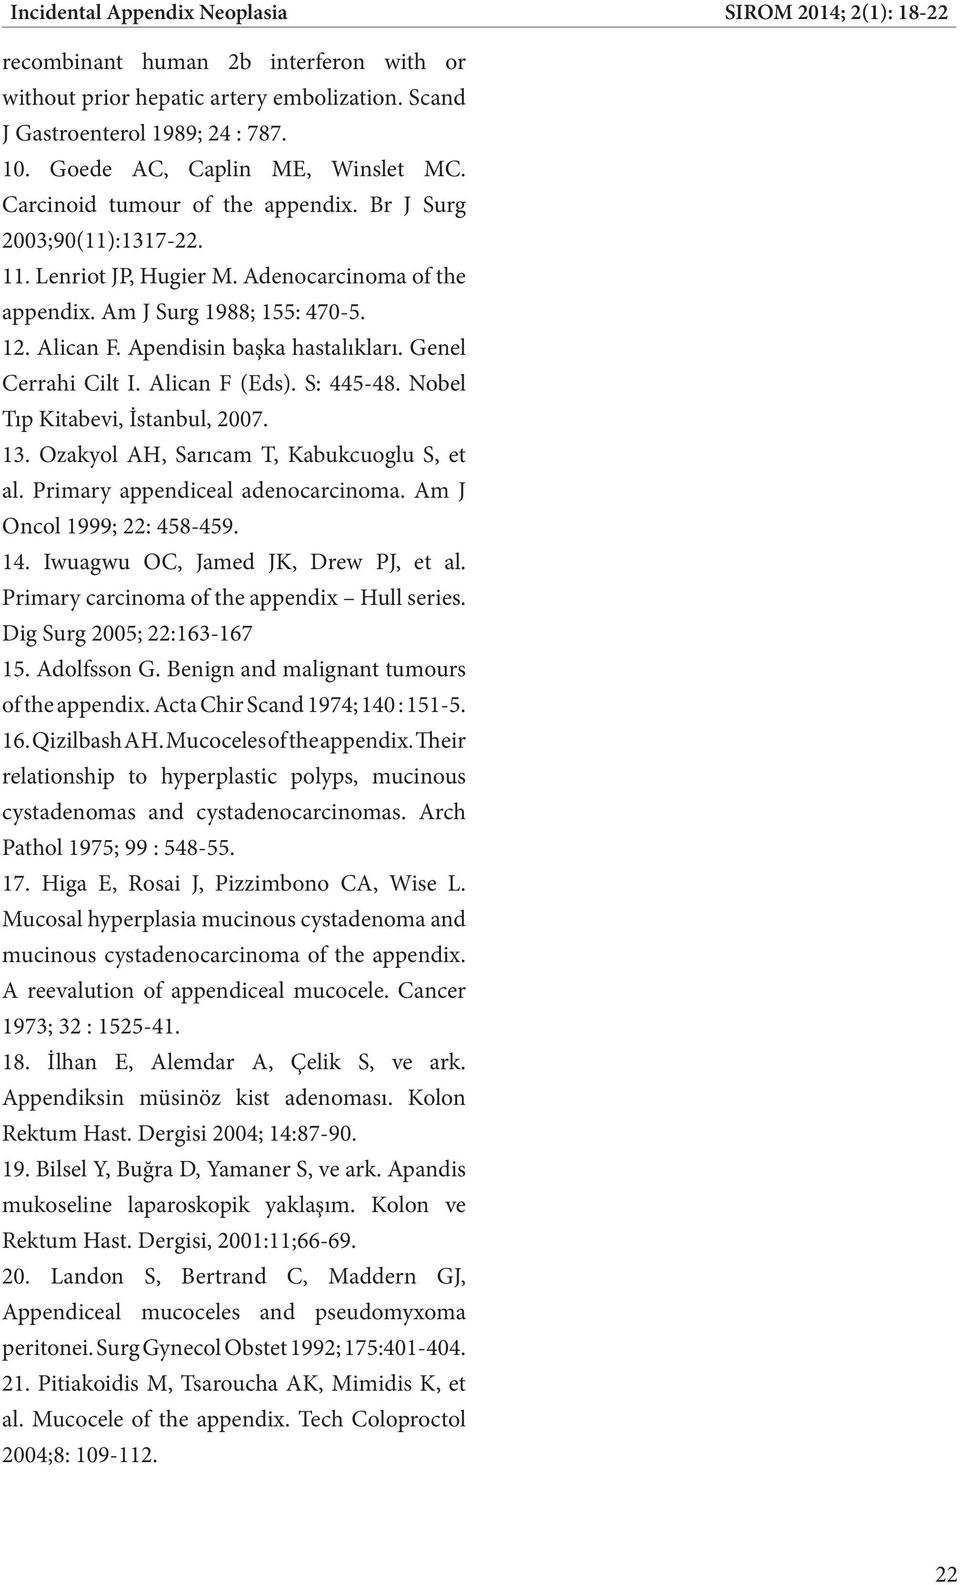 Apendisin başka hastalıkları. Genel Cerrahi Cilt I. Alican F (Eds). S: 445-48. Nobel Tıp Kitabevi, İstanbul, 2007. 13. Ozakyol AH, Sarıcam T, Kabukcuoglu S, et al. Primary appendiceal adenocarcinoma.